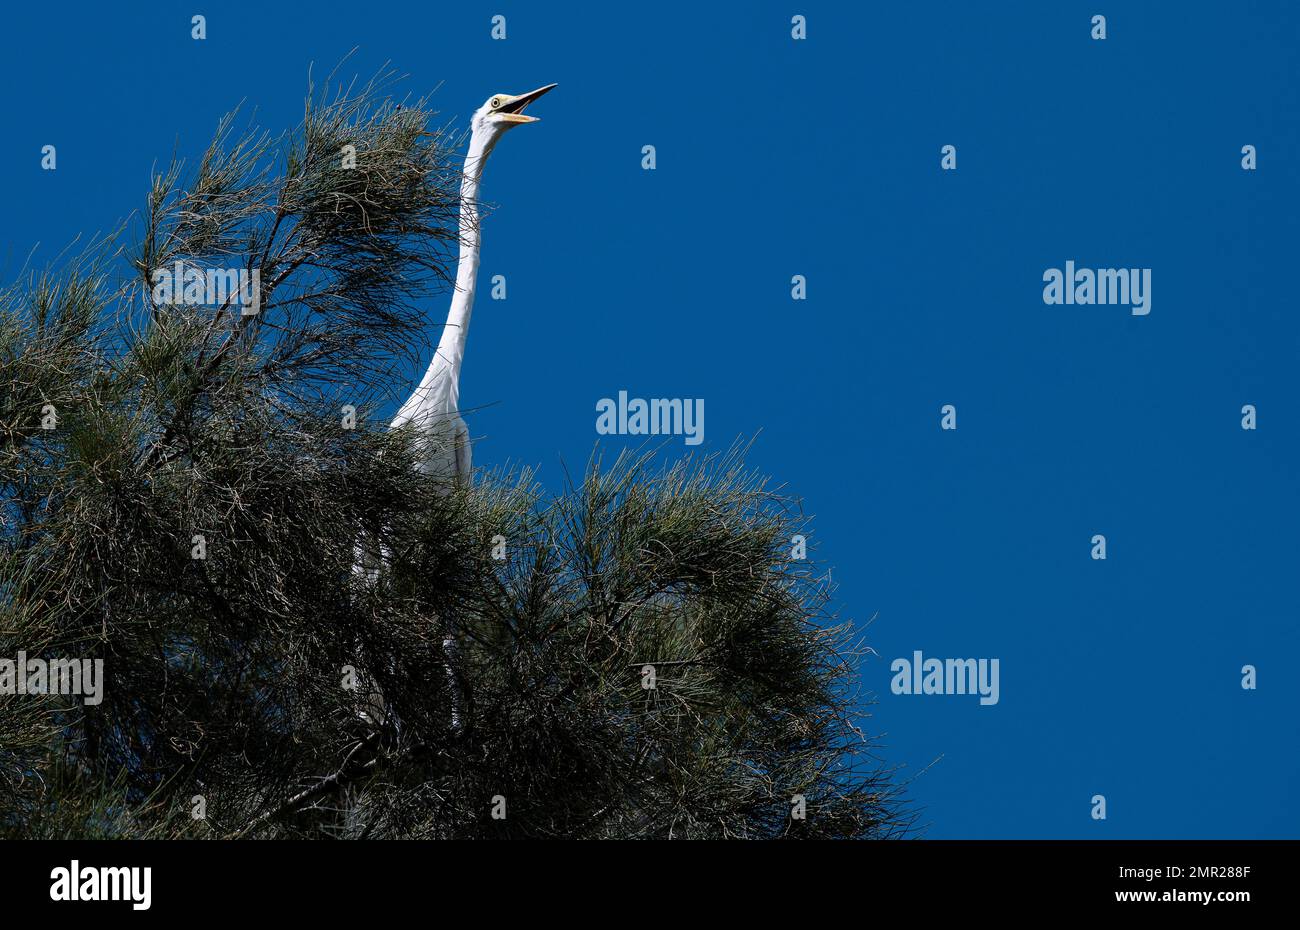 Un grand Egret de l'est (Ardea puma) perché sur un arbre dans le ciel à Sydney, Nouvelle-Galles du Sud, Australie (photo de Tara Chand Malhotra) Banque D'Images